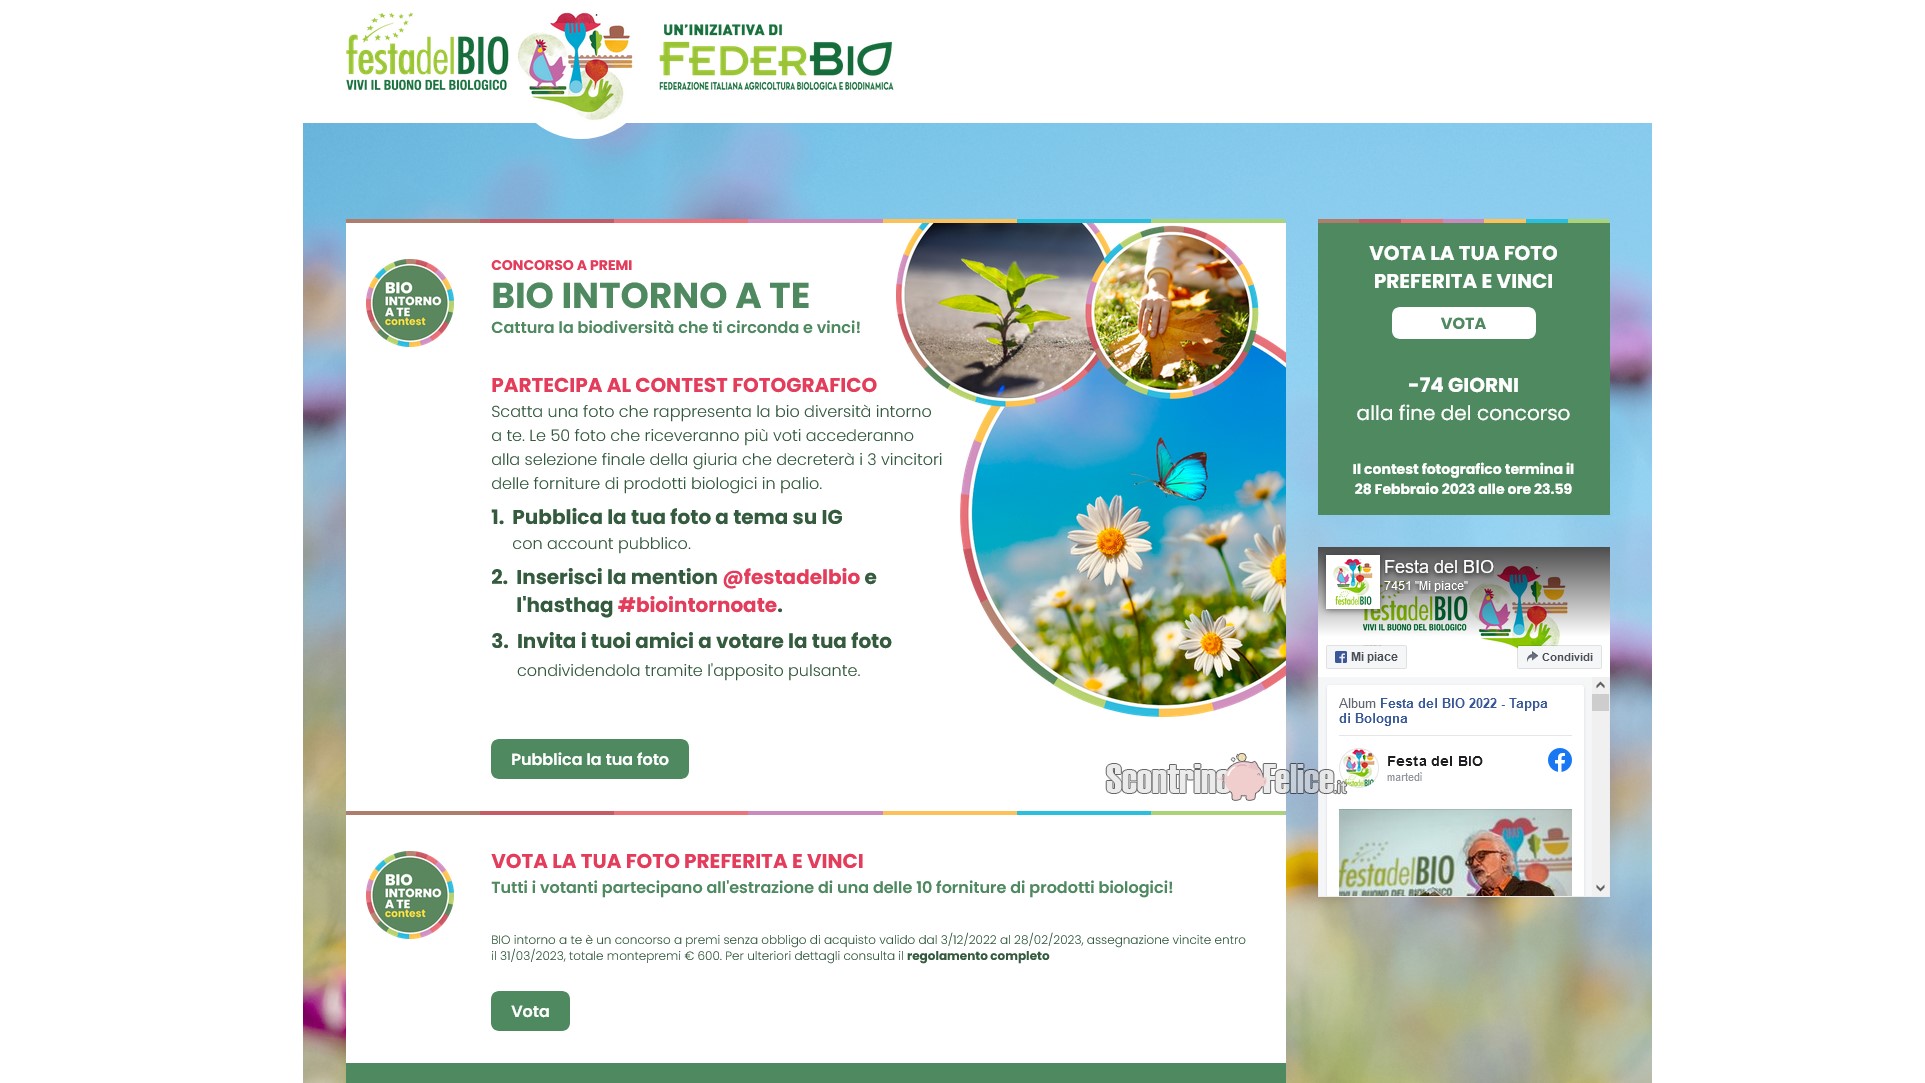 Festa del BIO: vinci gratis forniture di prodotti biologici